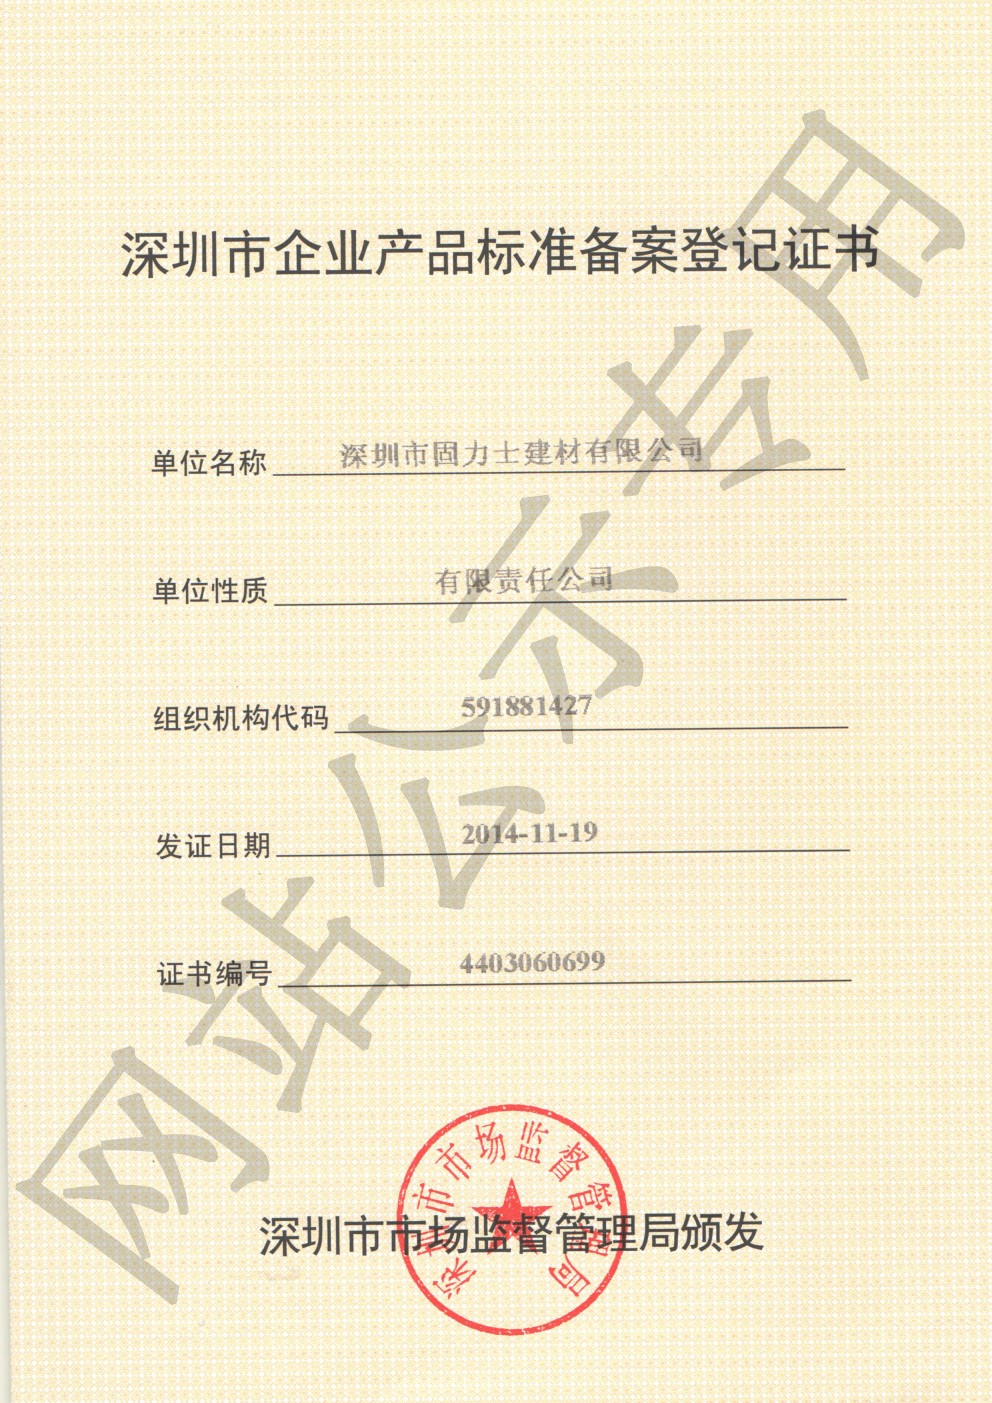 恒山企业产品标准登记证书